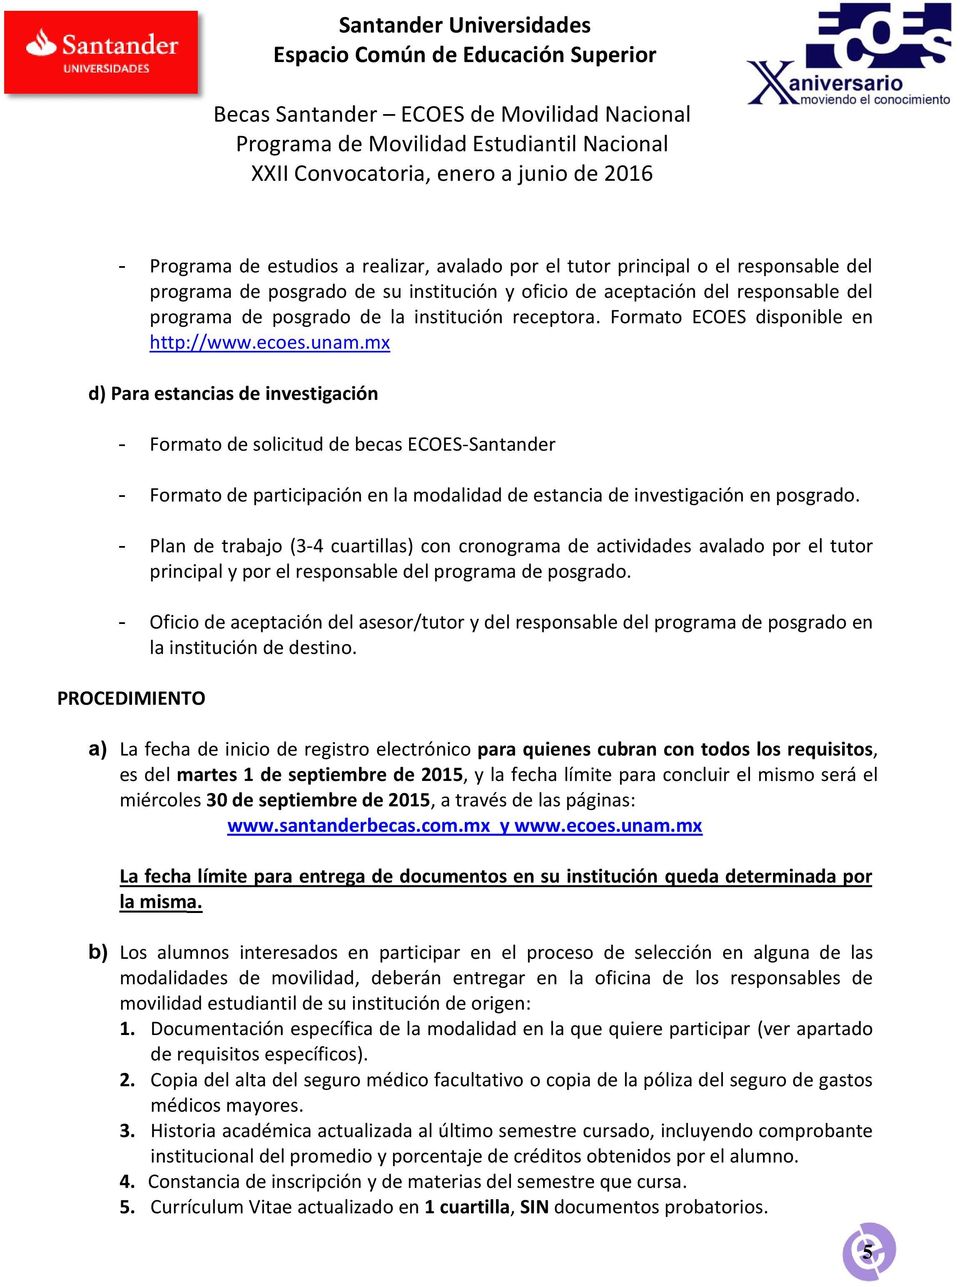 mx d) Para estancias de investigación - Formato de solicitud de becas ECOES-Santander - Formato de participación en la modalidad de estancia de investigación en posgrado.